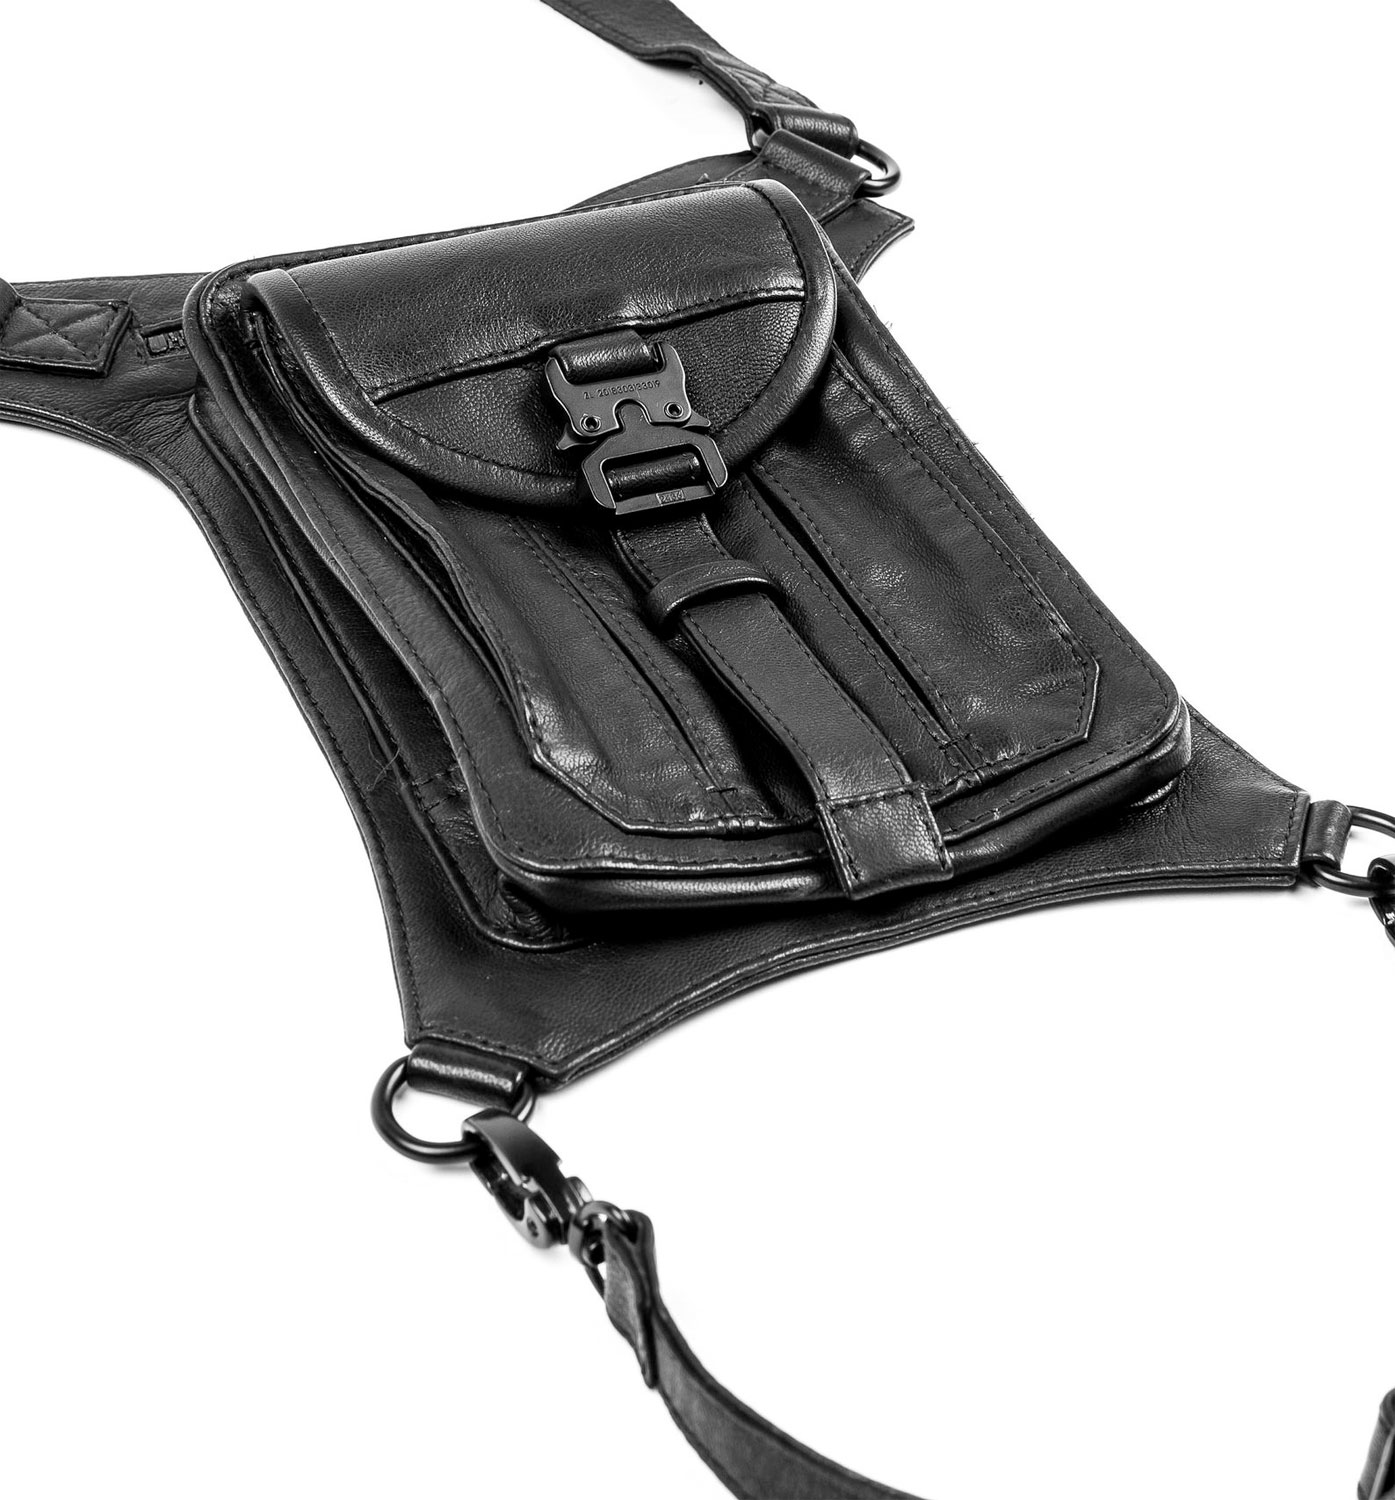 BLASTER 4.0 Black Leather Shoulder Holster and Hip Bag 